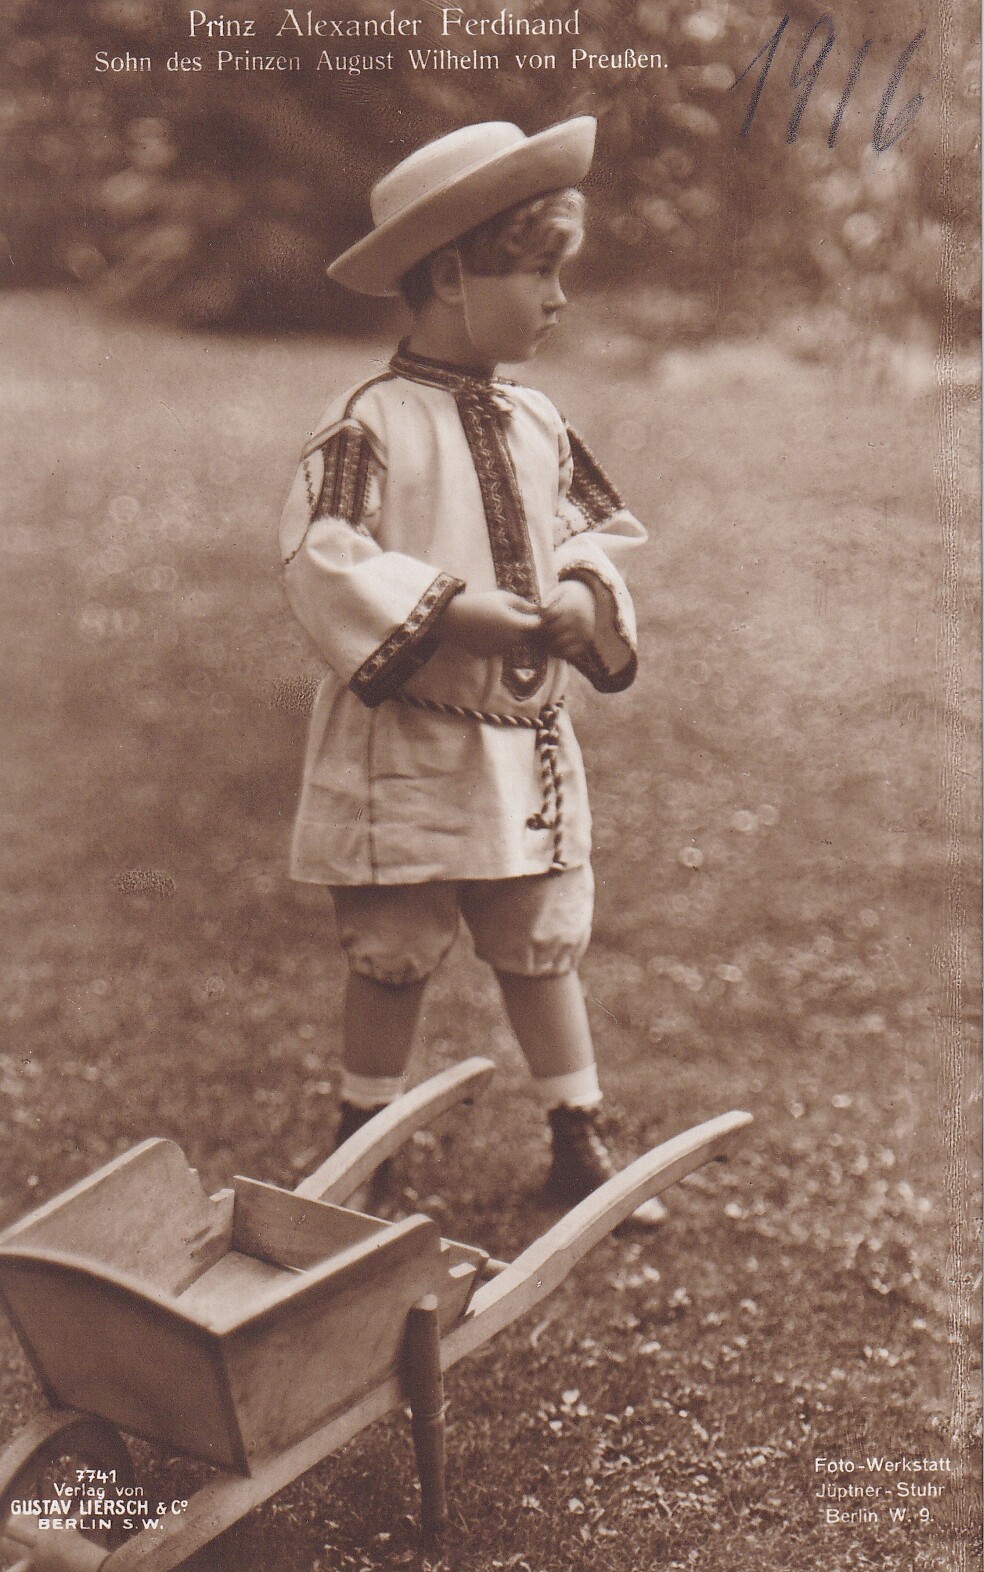 Bildpostkarte mit Foto des Prinzen Alexander Ferdinand von Preußen, 1916 (Schloß Wernigerode GmbH RR-F)